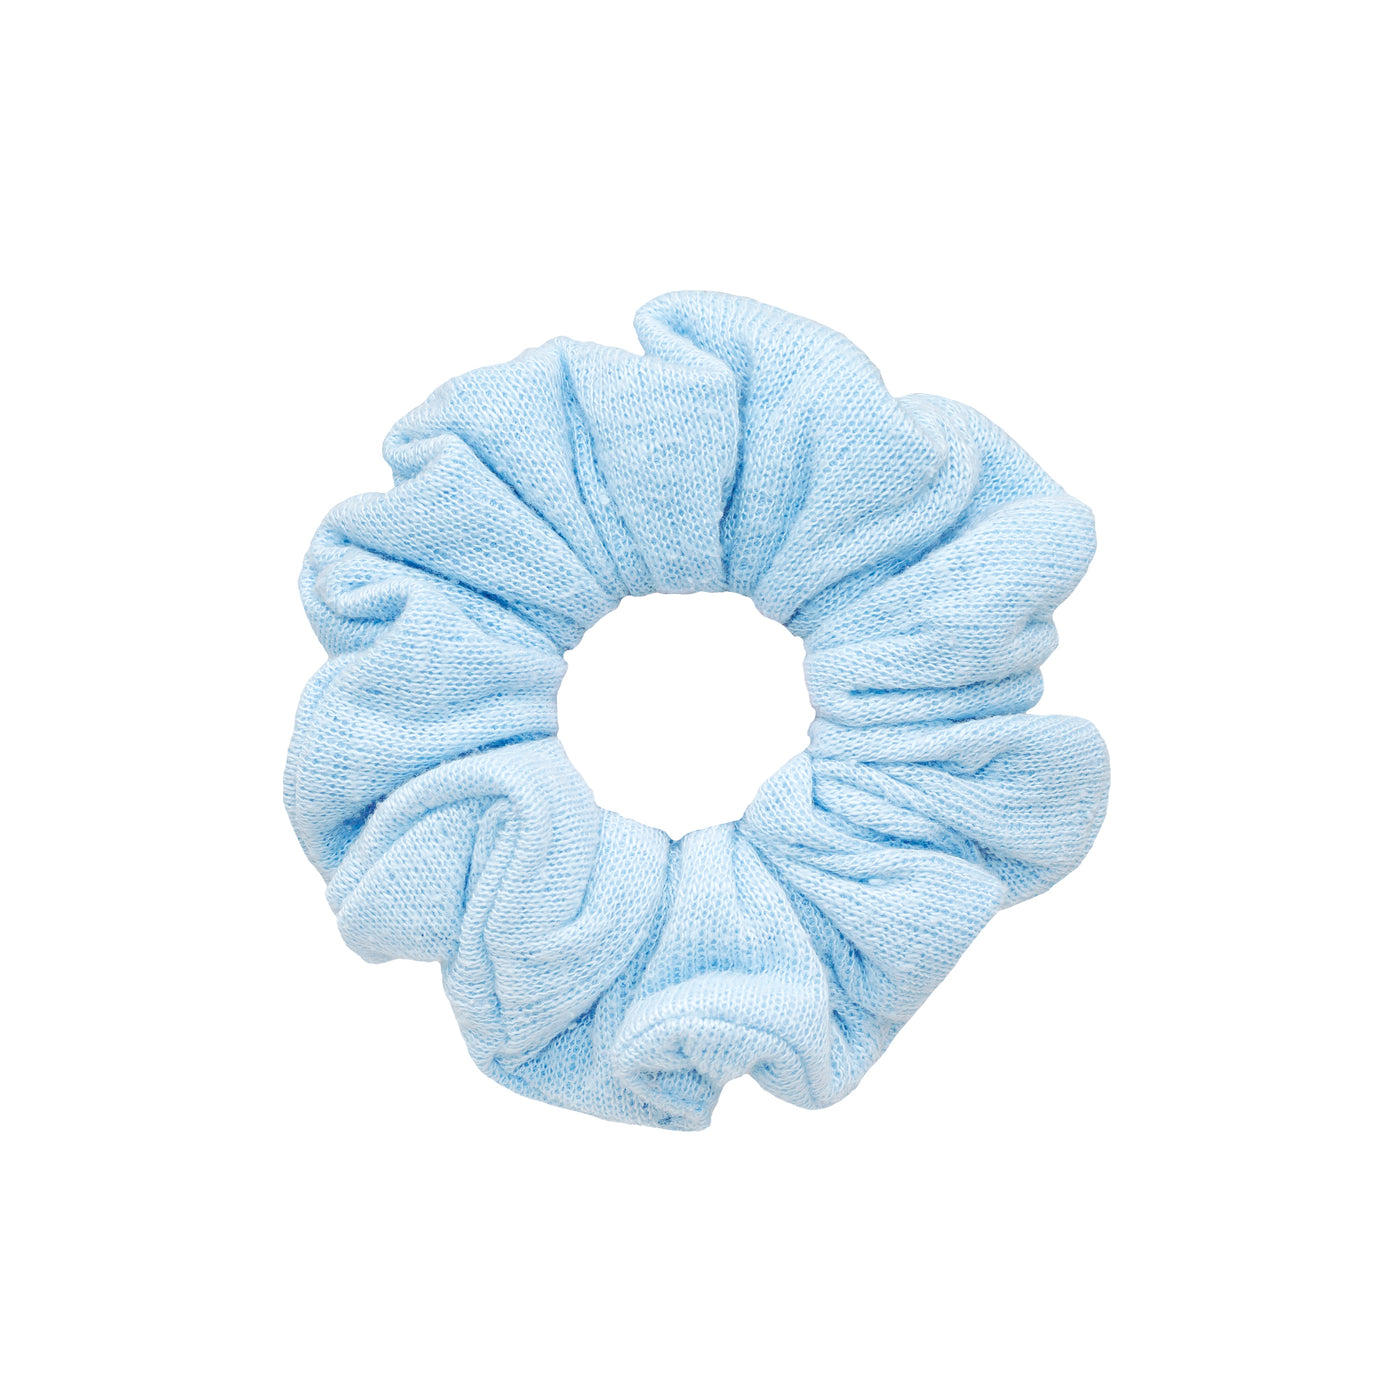 Pointelle Scrunchie in Baby Blue